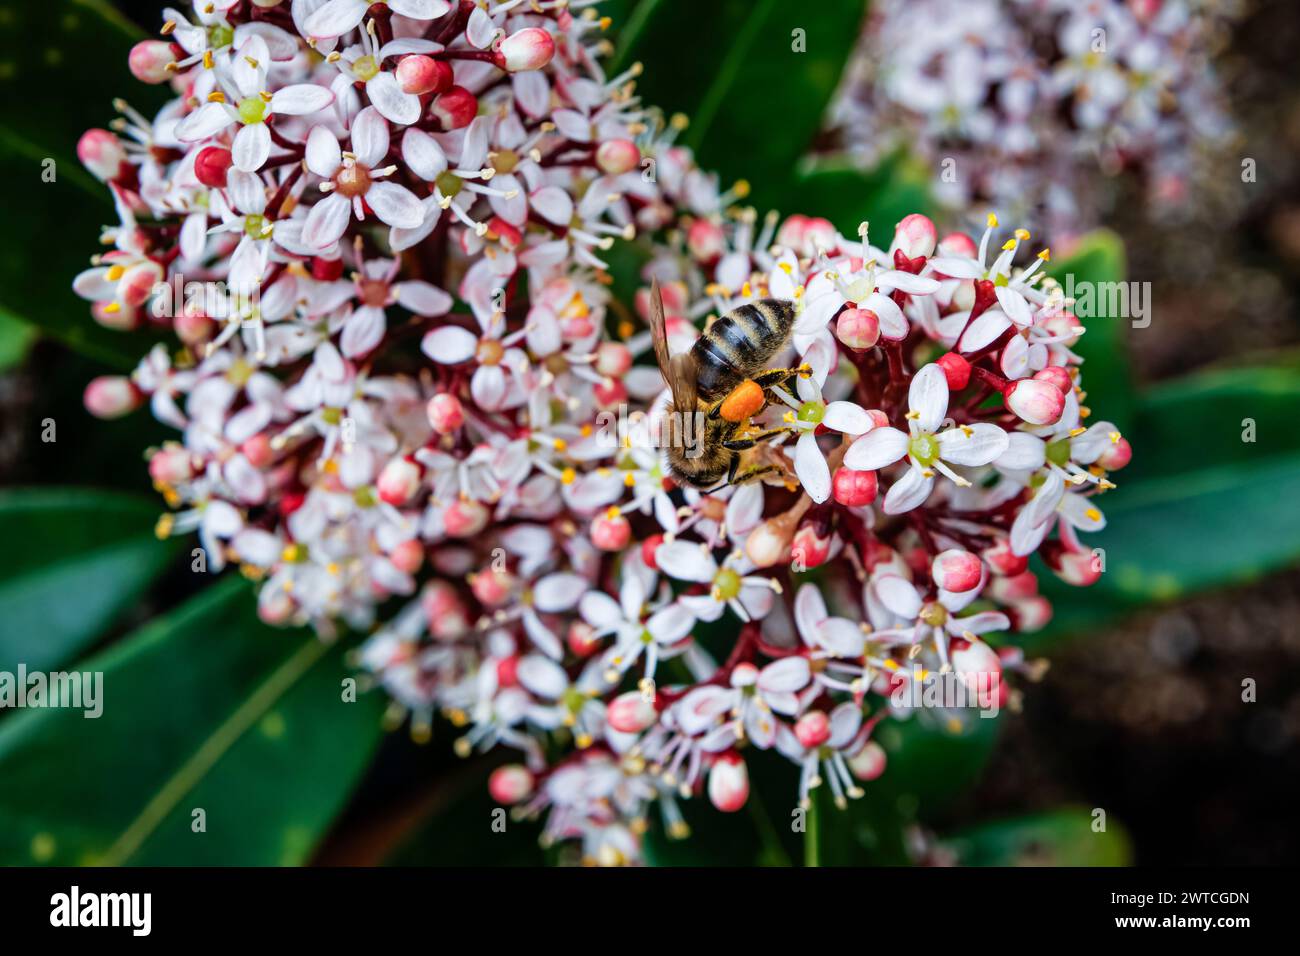 Une abeille recueille le pollen dans un panier de pollen ou corbicule à partir des panicules d'un arbuste Skimmia japonica 'Rubella' fleurissant dans un jardin du Surrey au printemps Banque D'Images